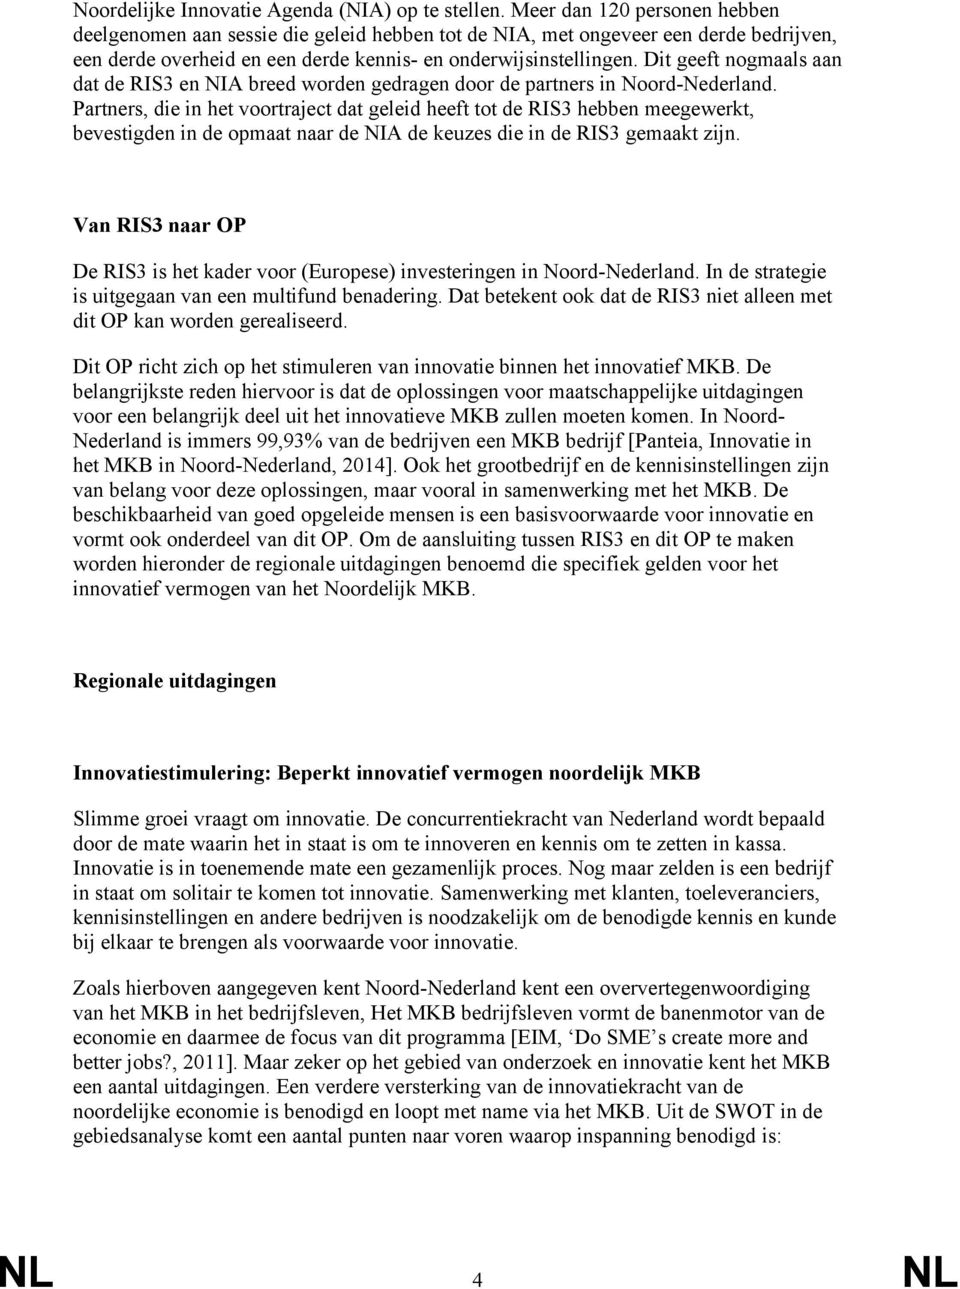 Dit geeft nogmaals aan dat de RIS3 en NIA breed worden gedragen door de partners in Noord-Nederland.